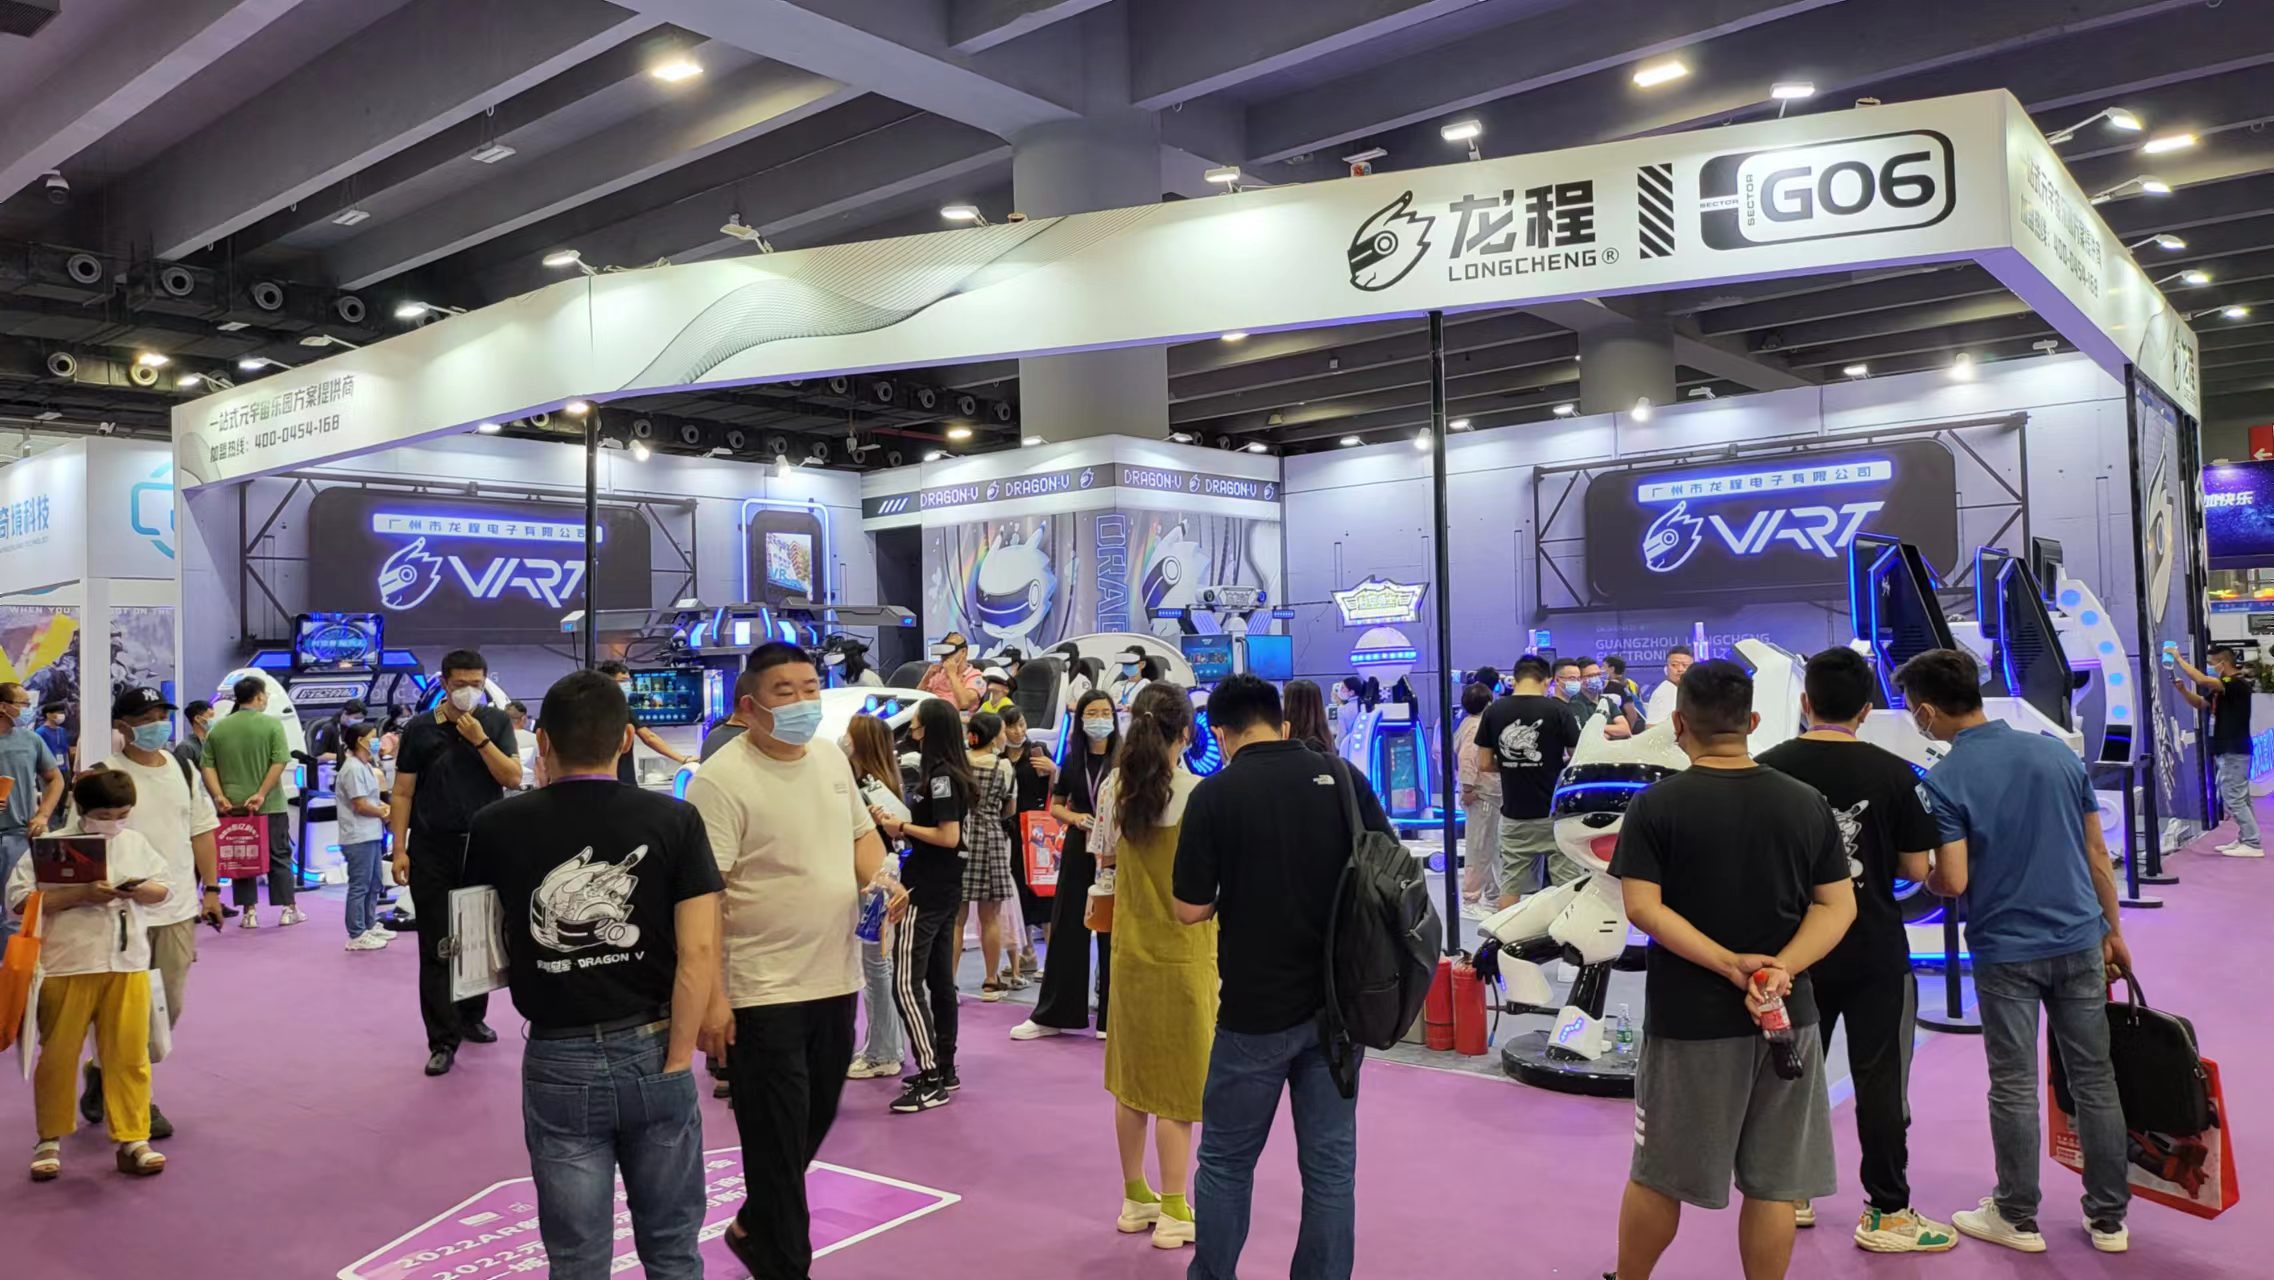 VART VR |Guangzhou Metaverse Exhibition Booth G06 Yakakurumbira